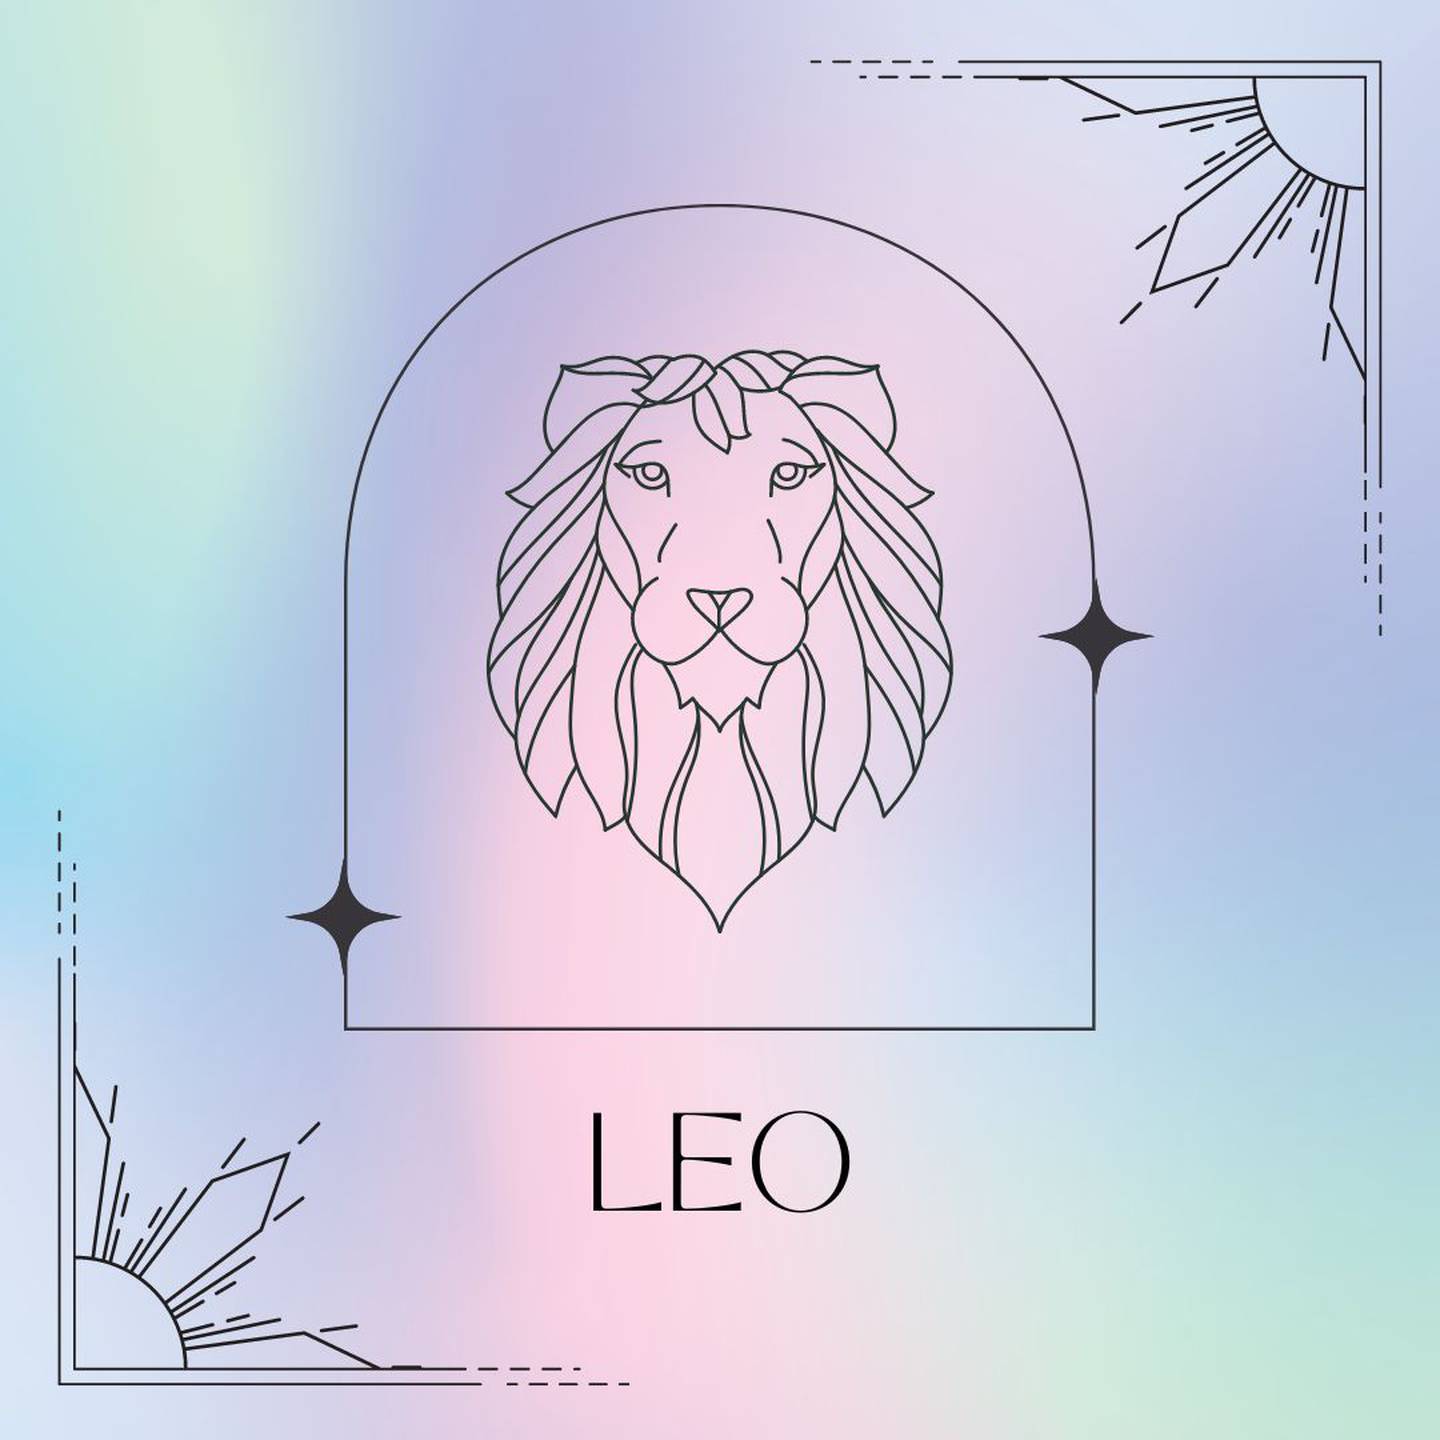 Dibujado en negro, el símbolo de Leo aparece enmarcado sobre un fondo de suaves colores pastel.